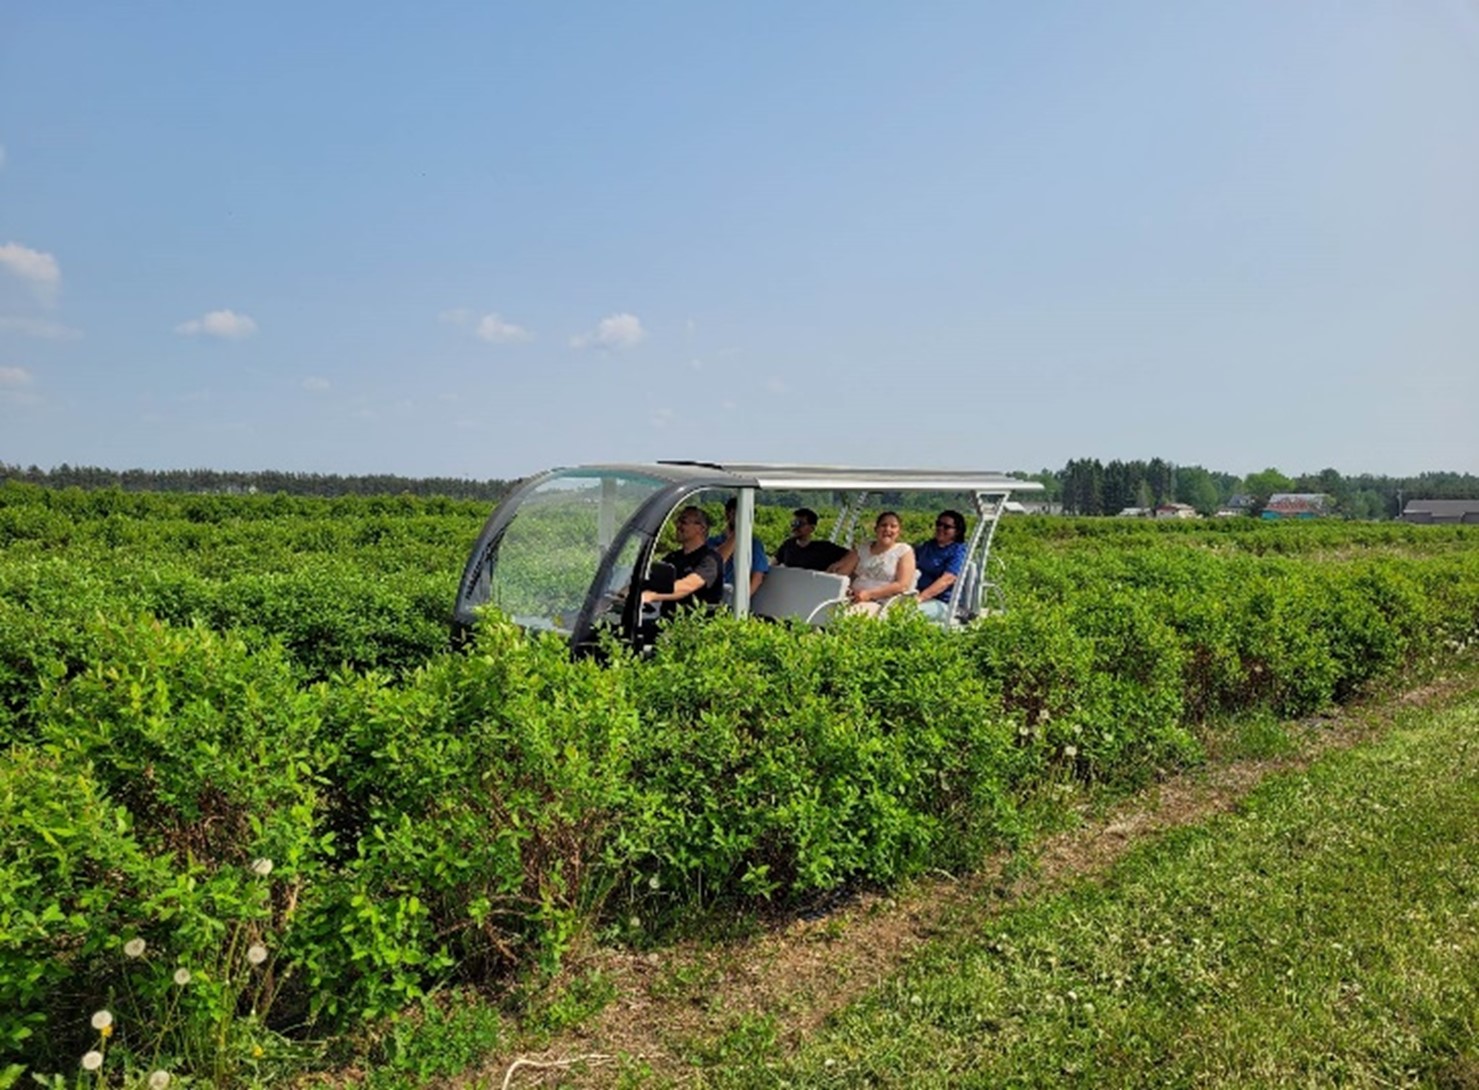  Cinq personnes sont à bord d’un véhicule adapté pour visiter un champ de camerises.